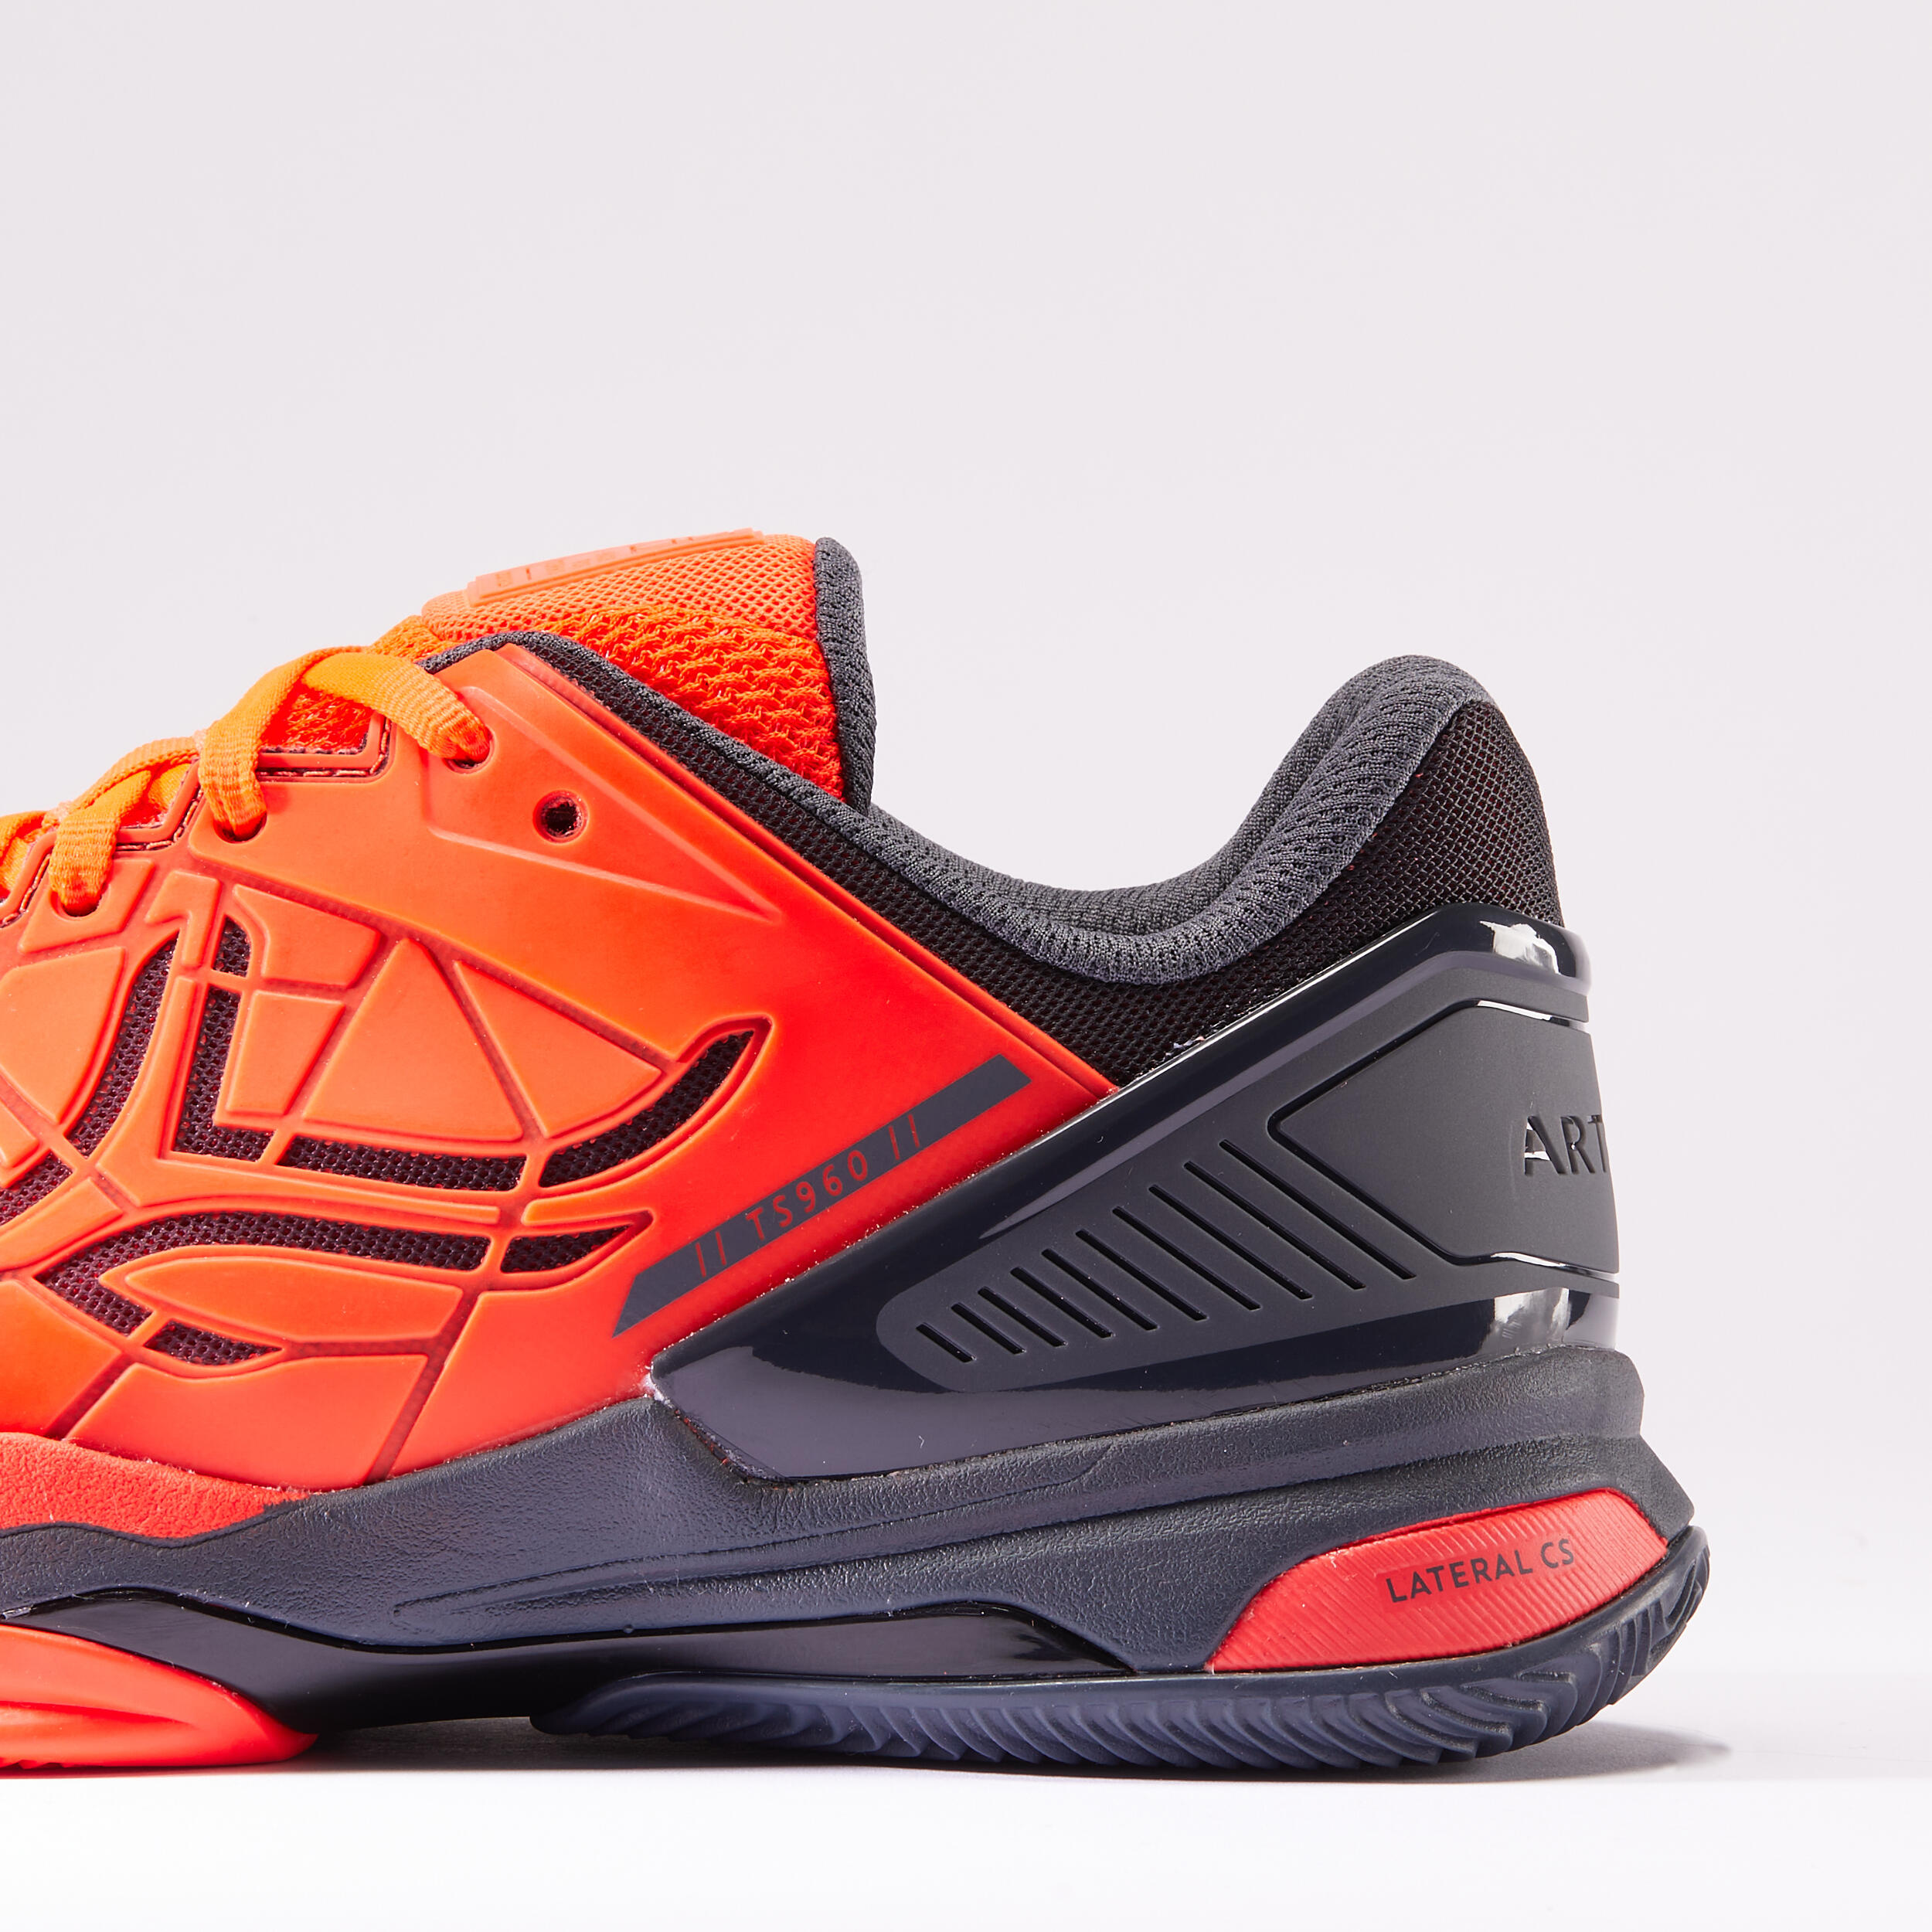 Men's Clay Court Tennis Shoes Strong Pro - Orange 5/8